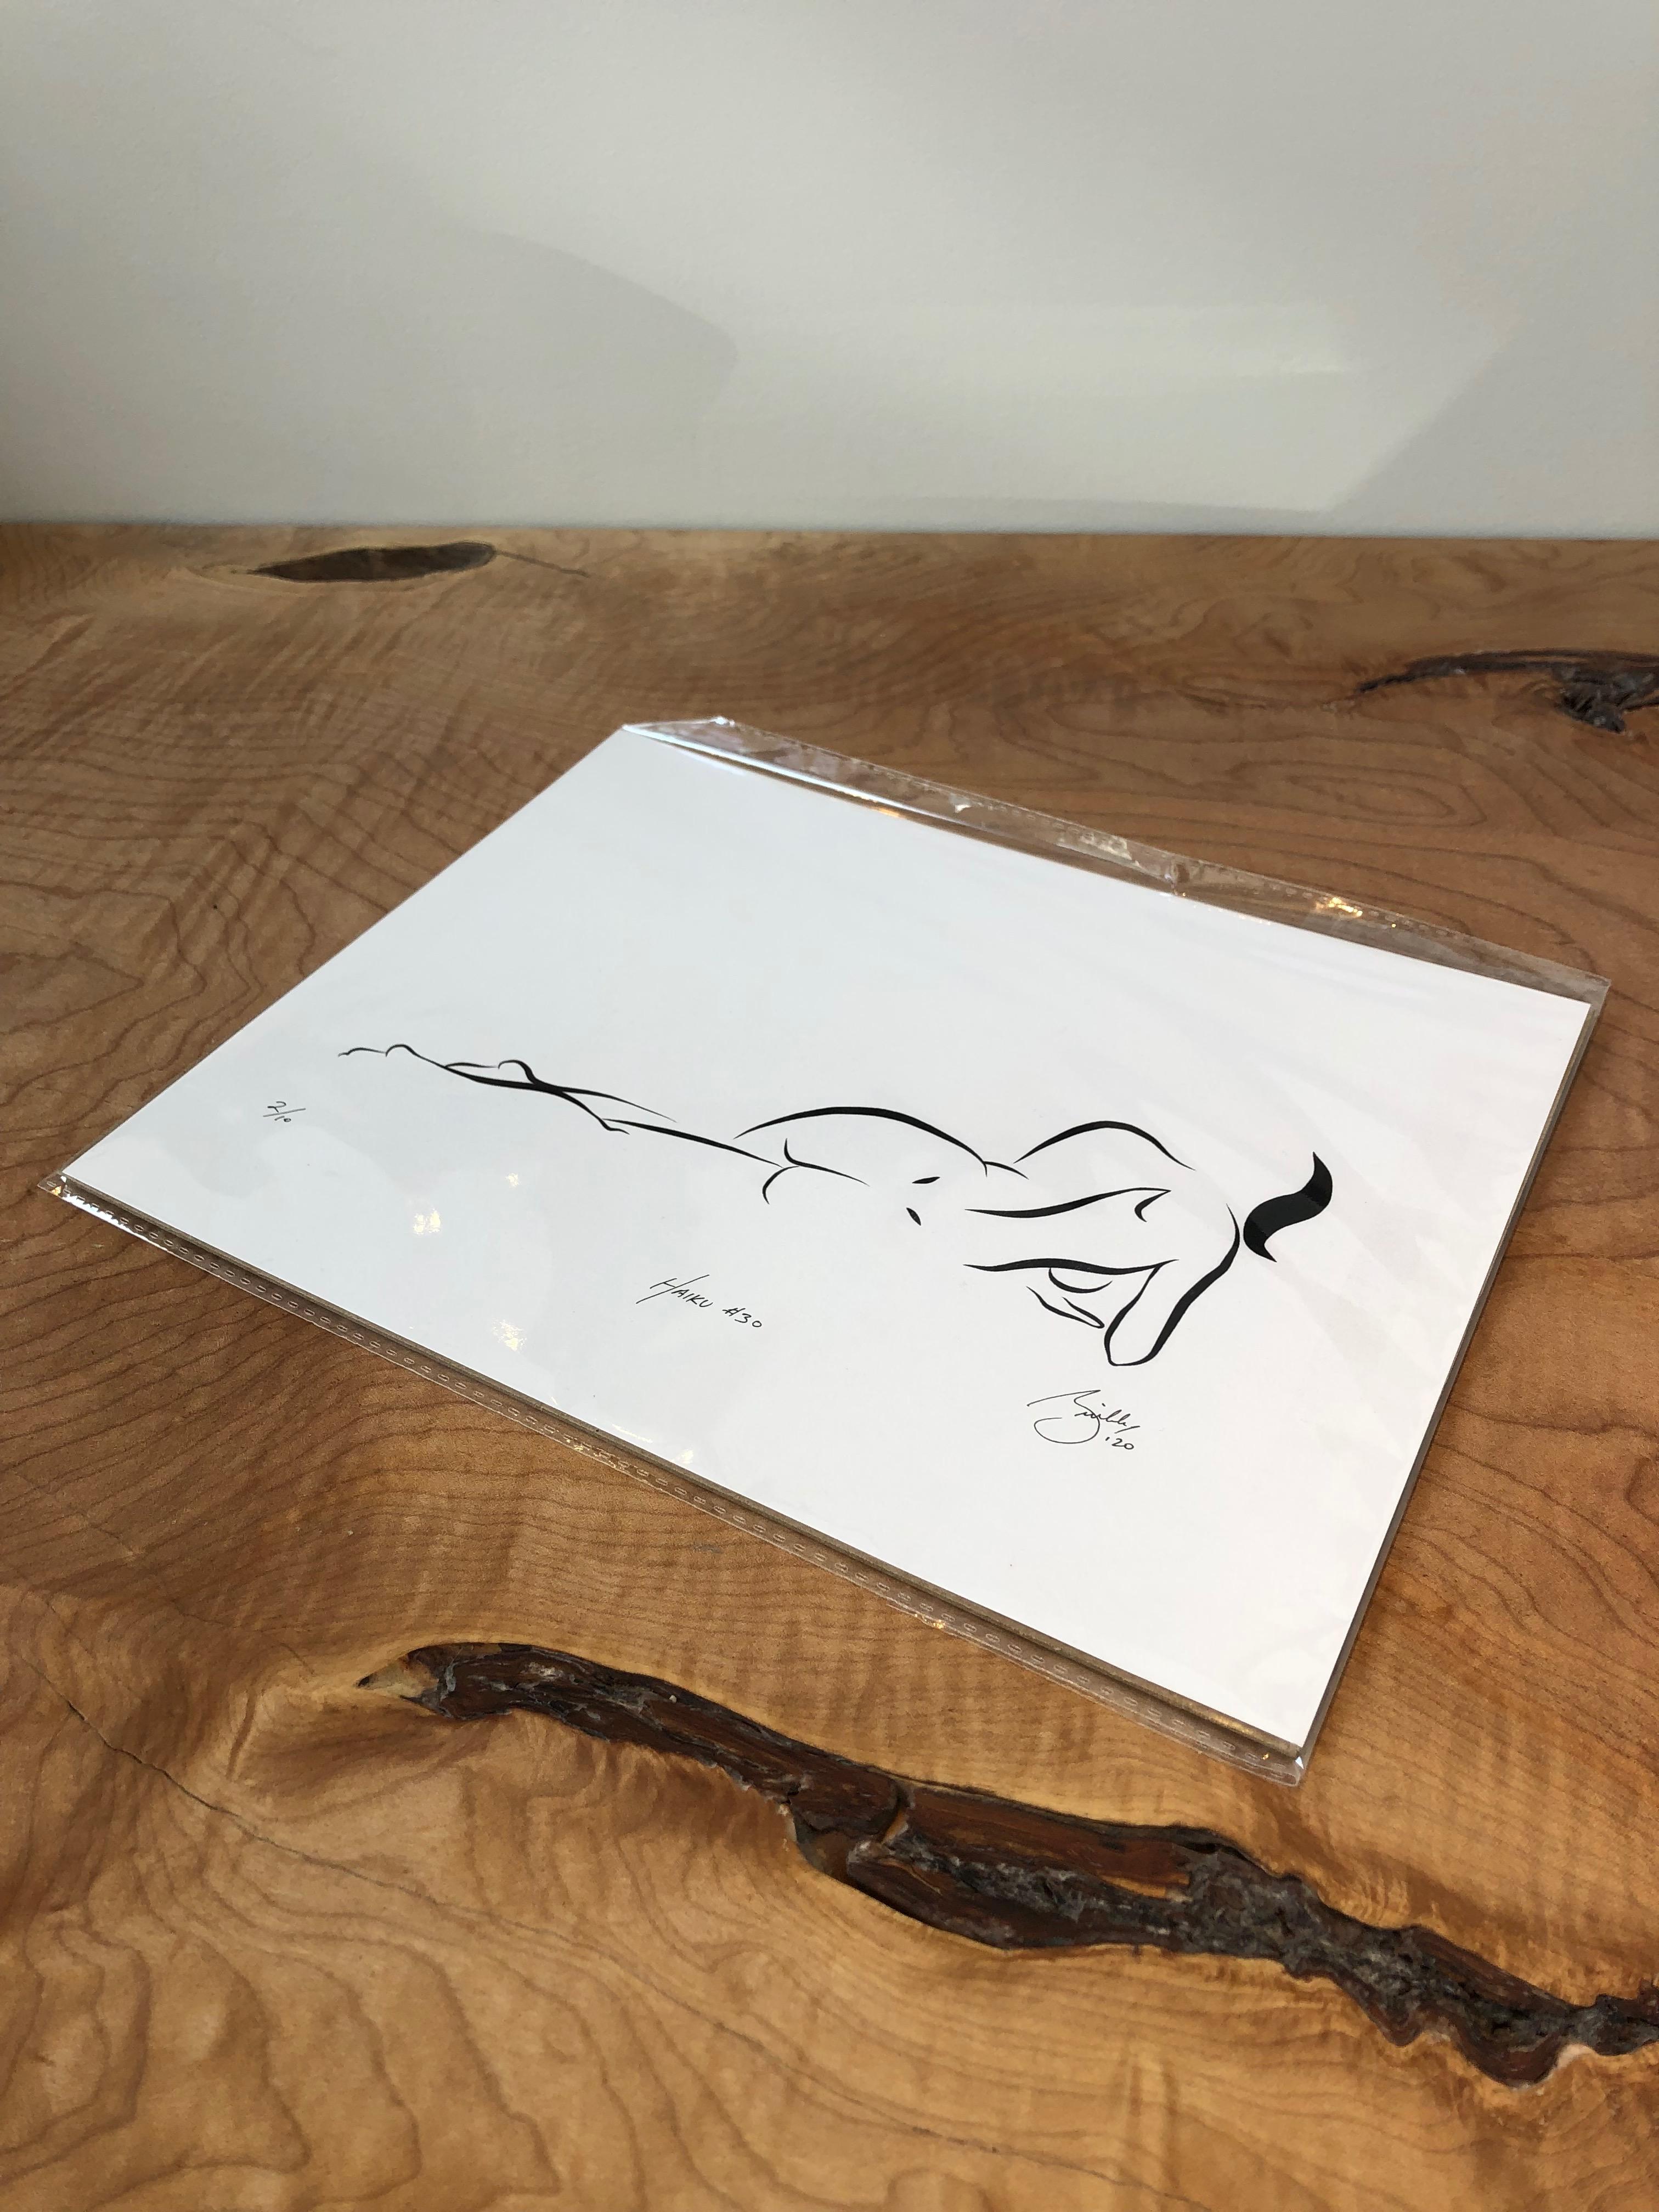 Haiku #30, 6/50 - Digital Vector Drawing Reclining Female Nude Woman Figure - Print by Michael Binkley